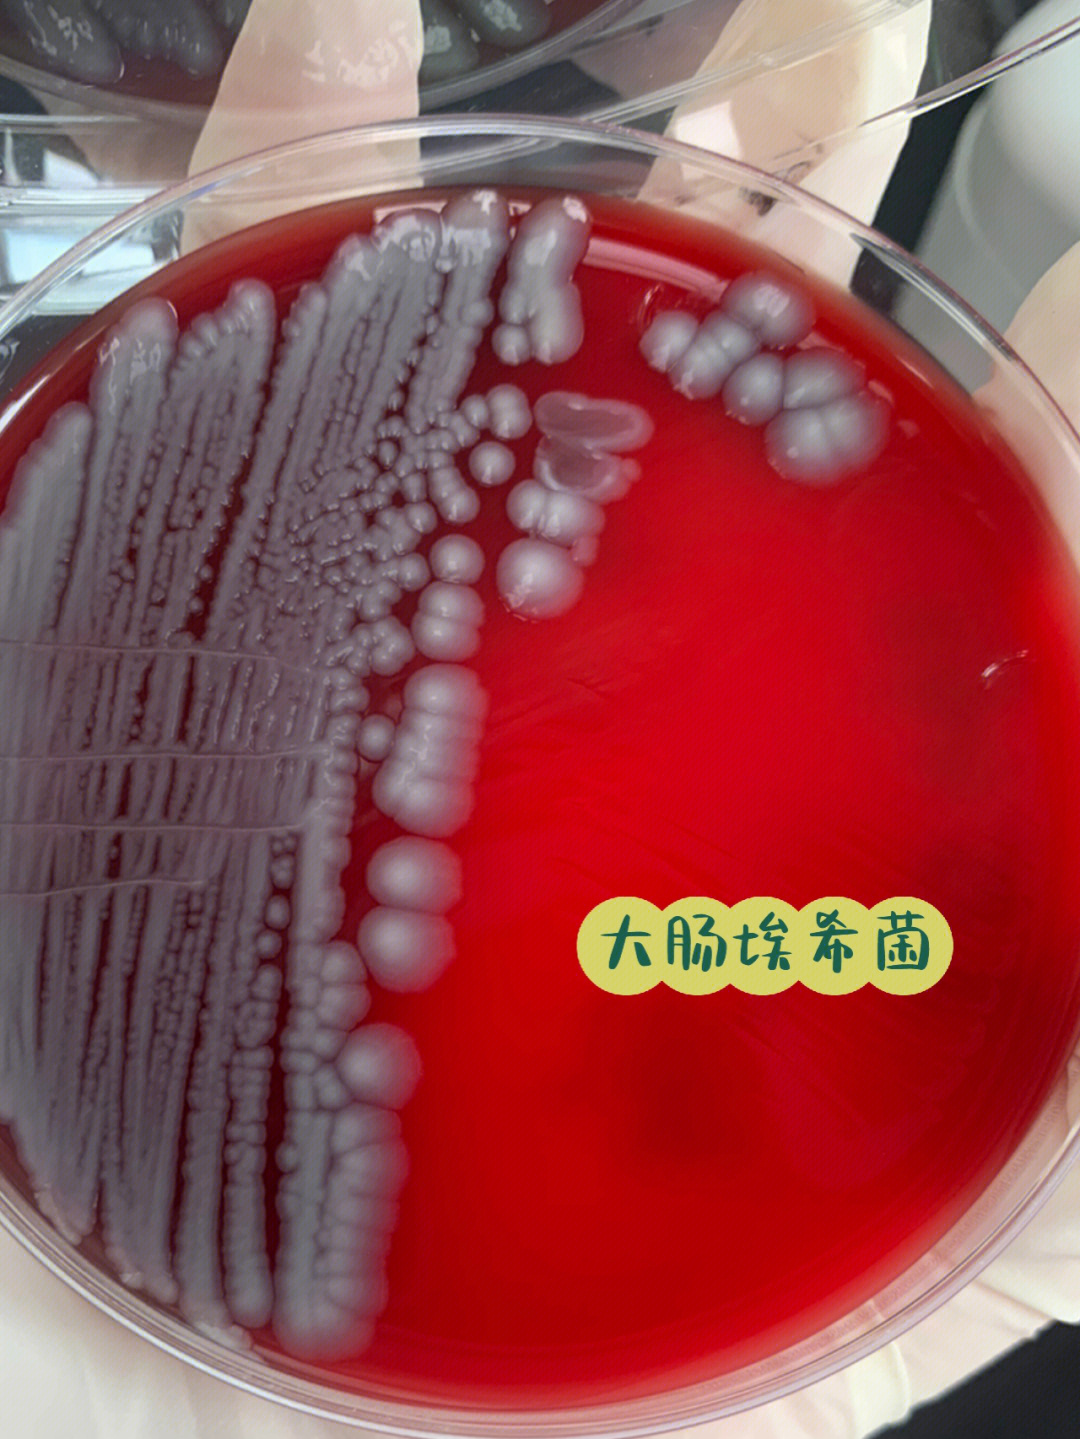 大肠埃希菌镜下形态图片